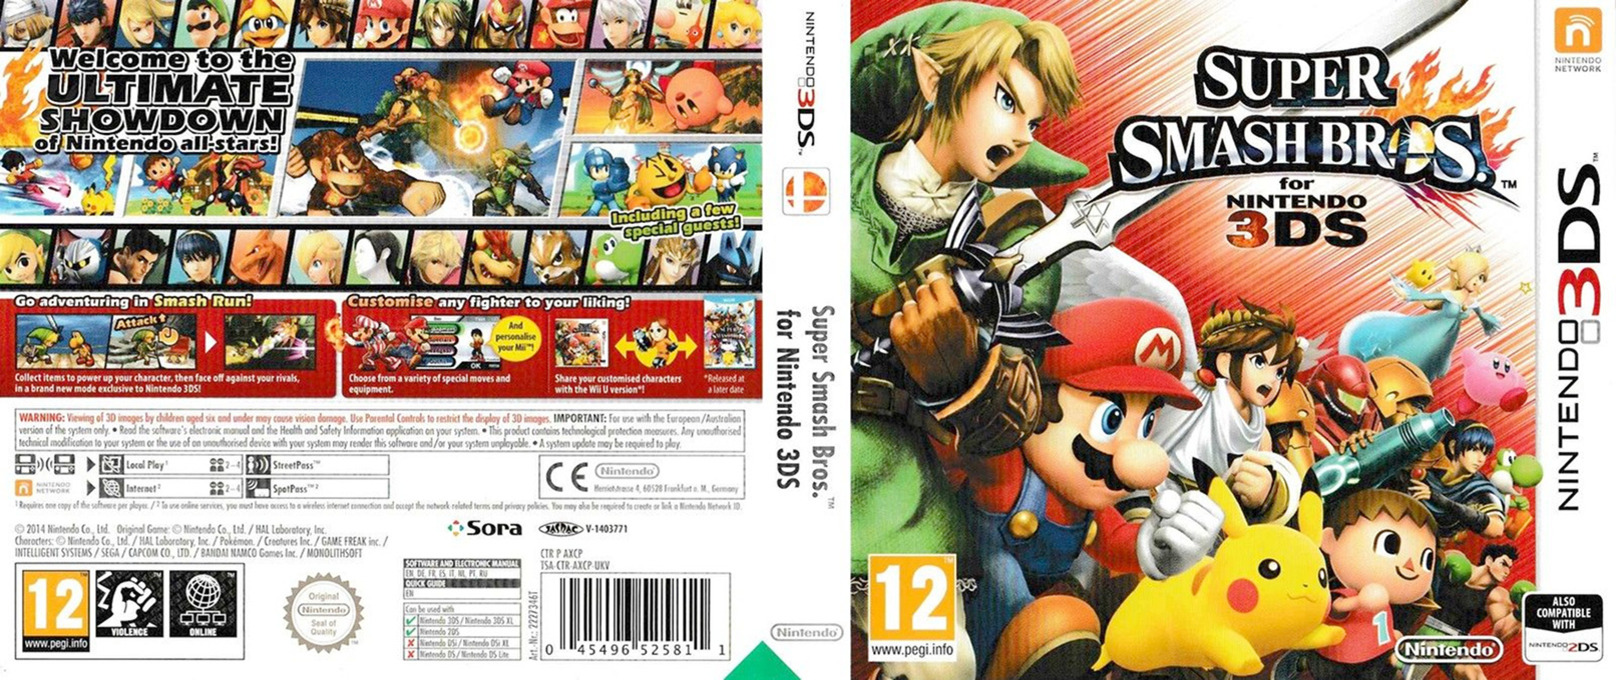 Manual de utilizare Nintendo Super Smash Bros. (3DS)